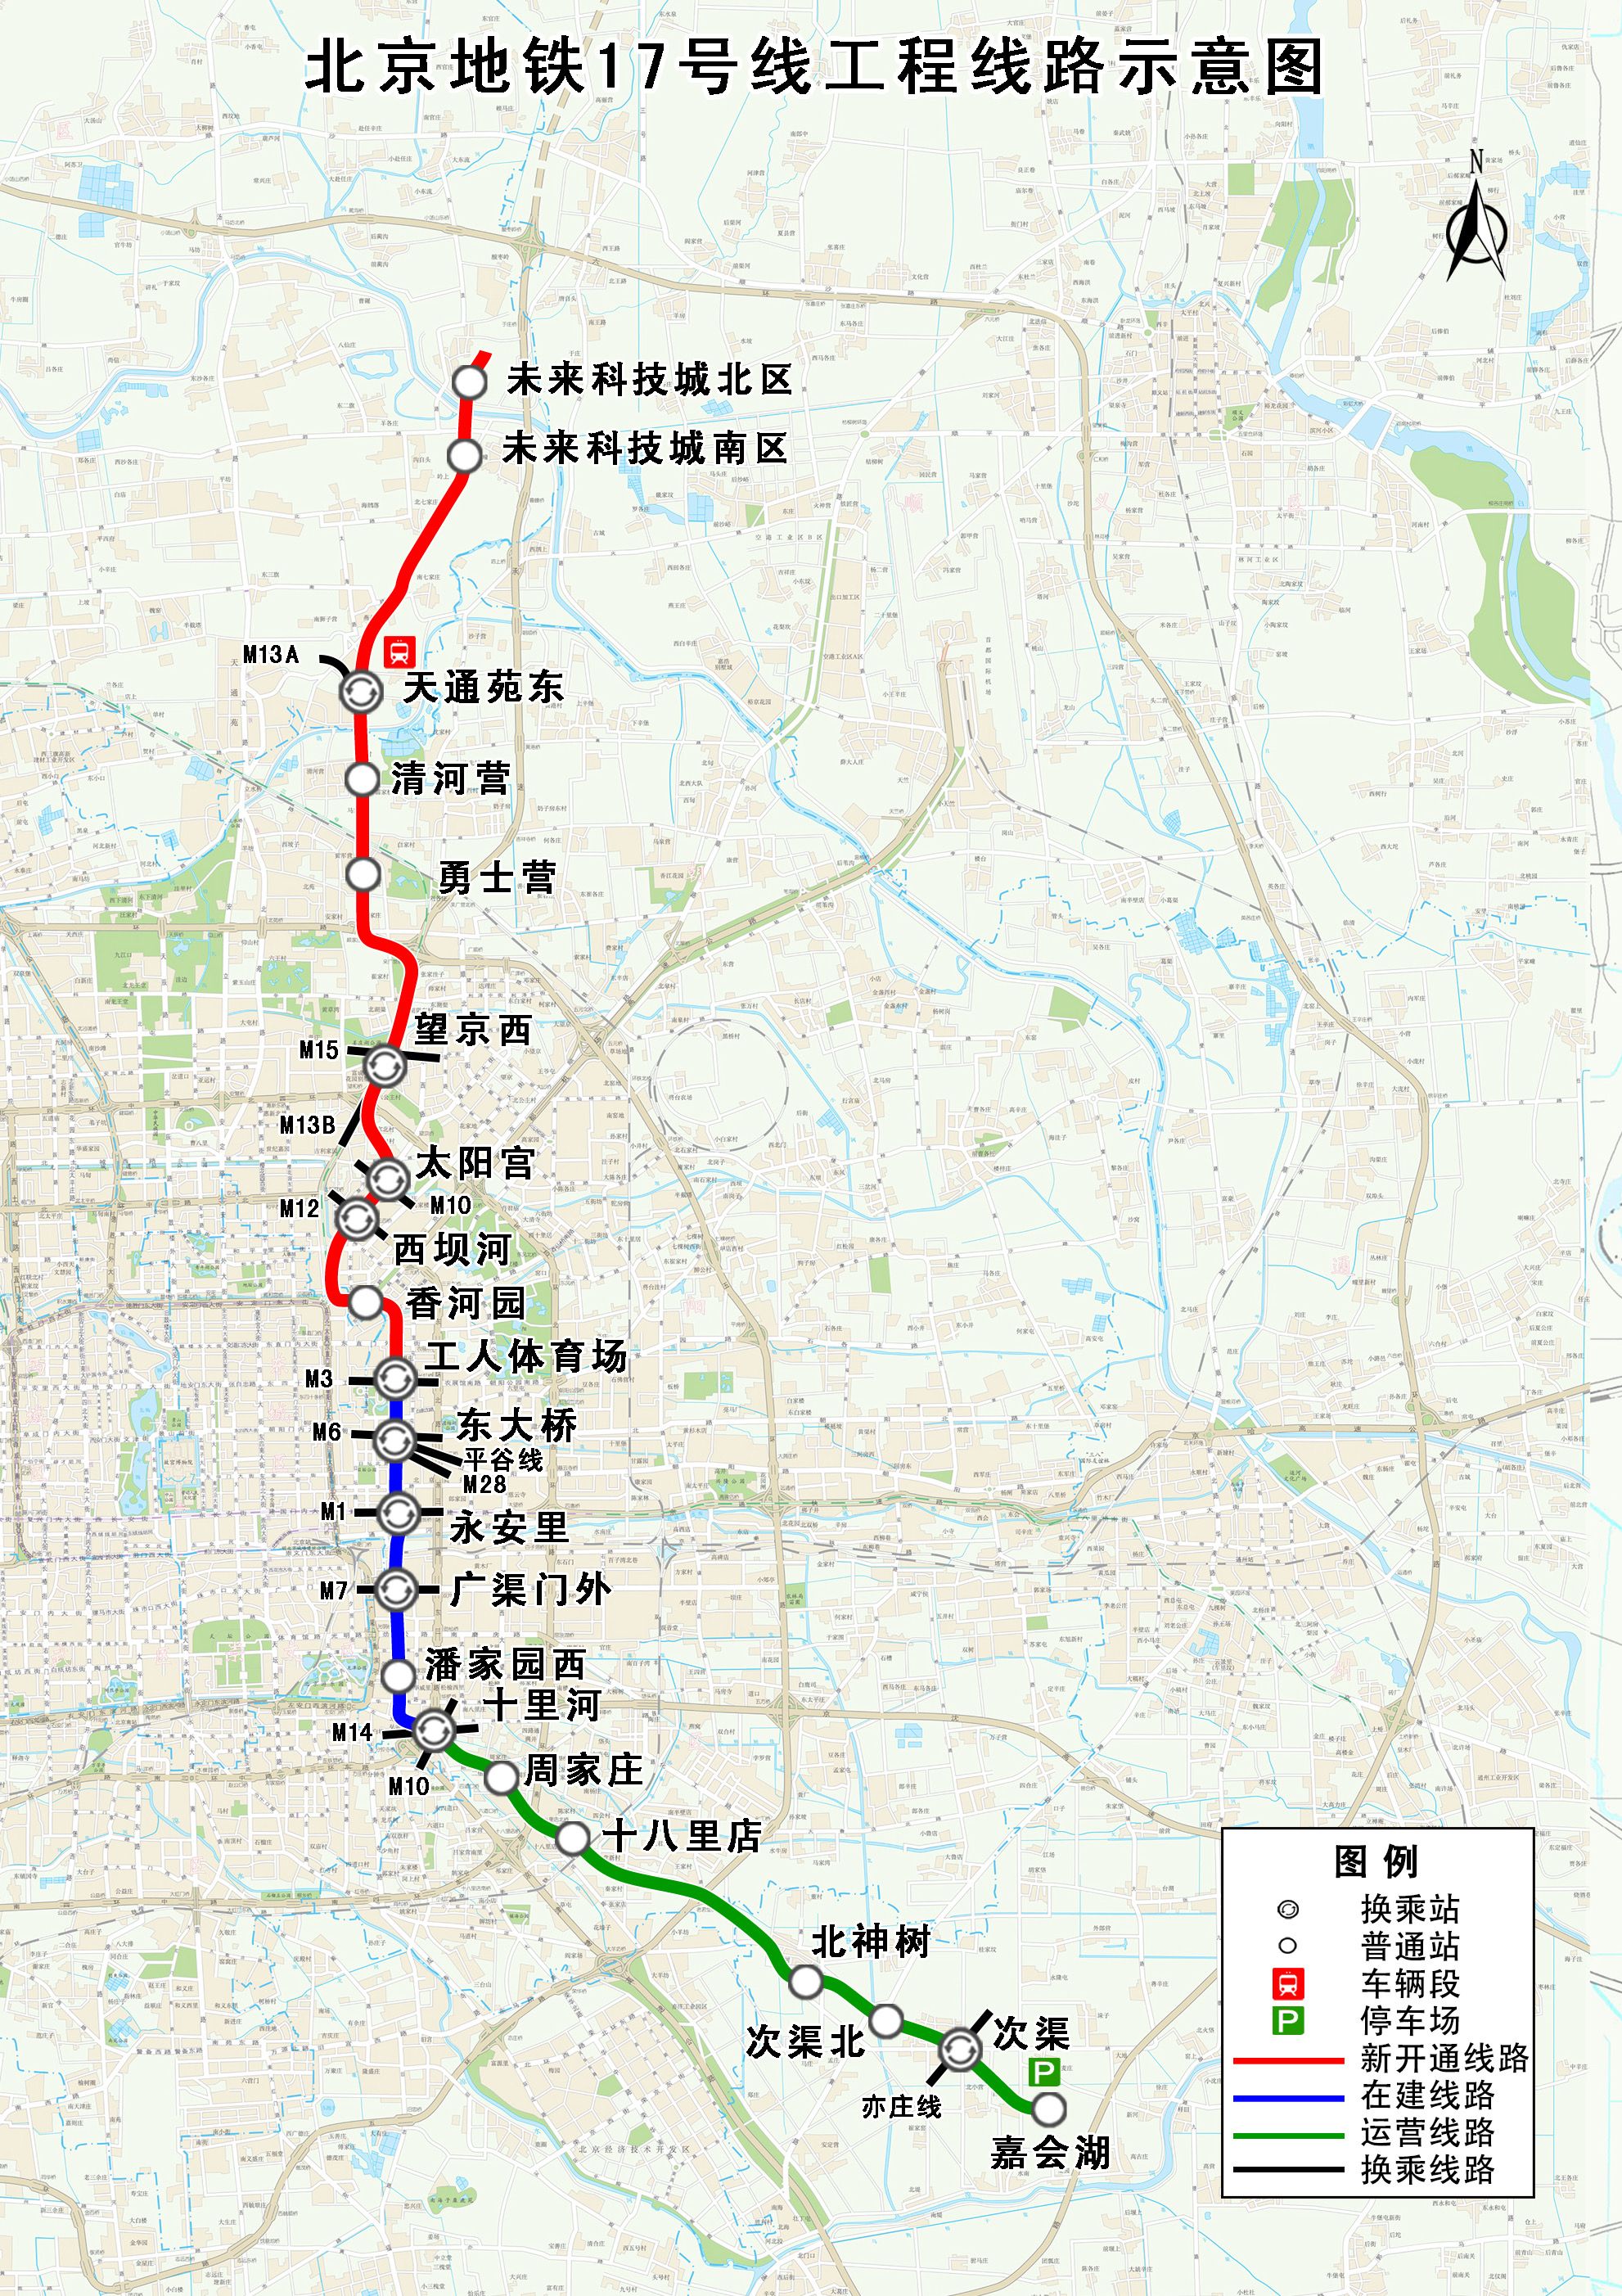 北京地铁17号线工程线路示意图北京市重大项目办供图